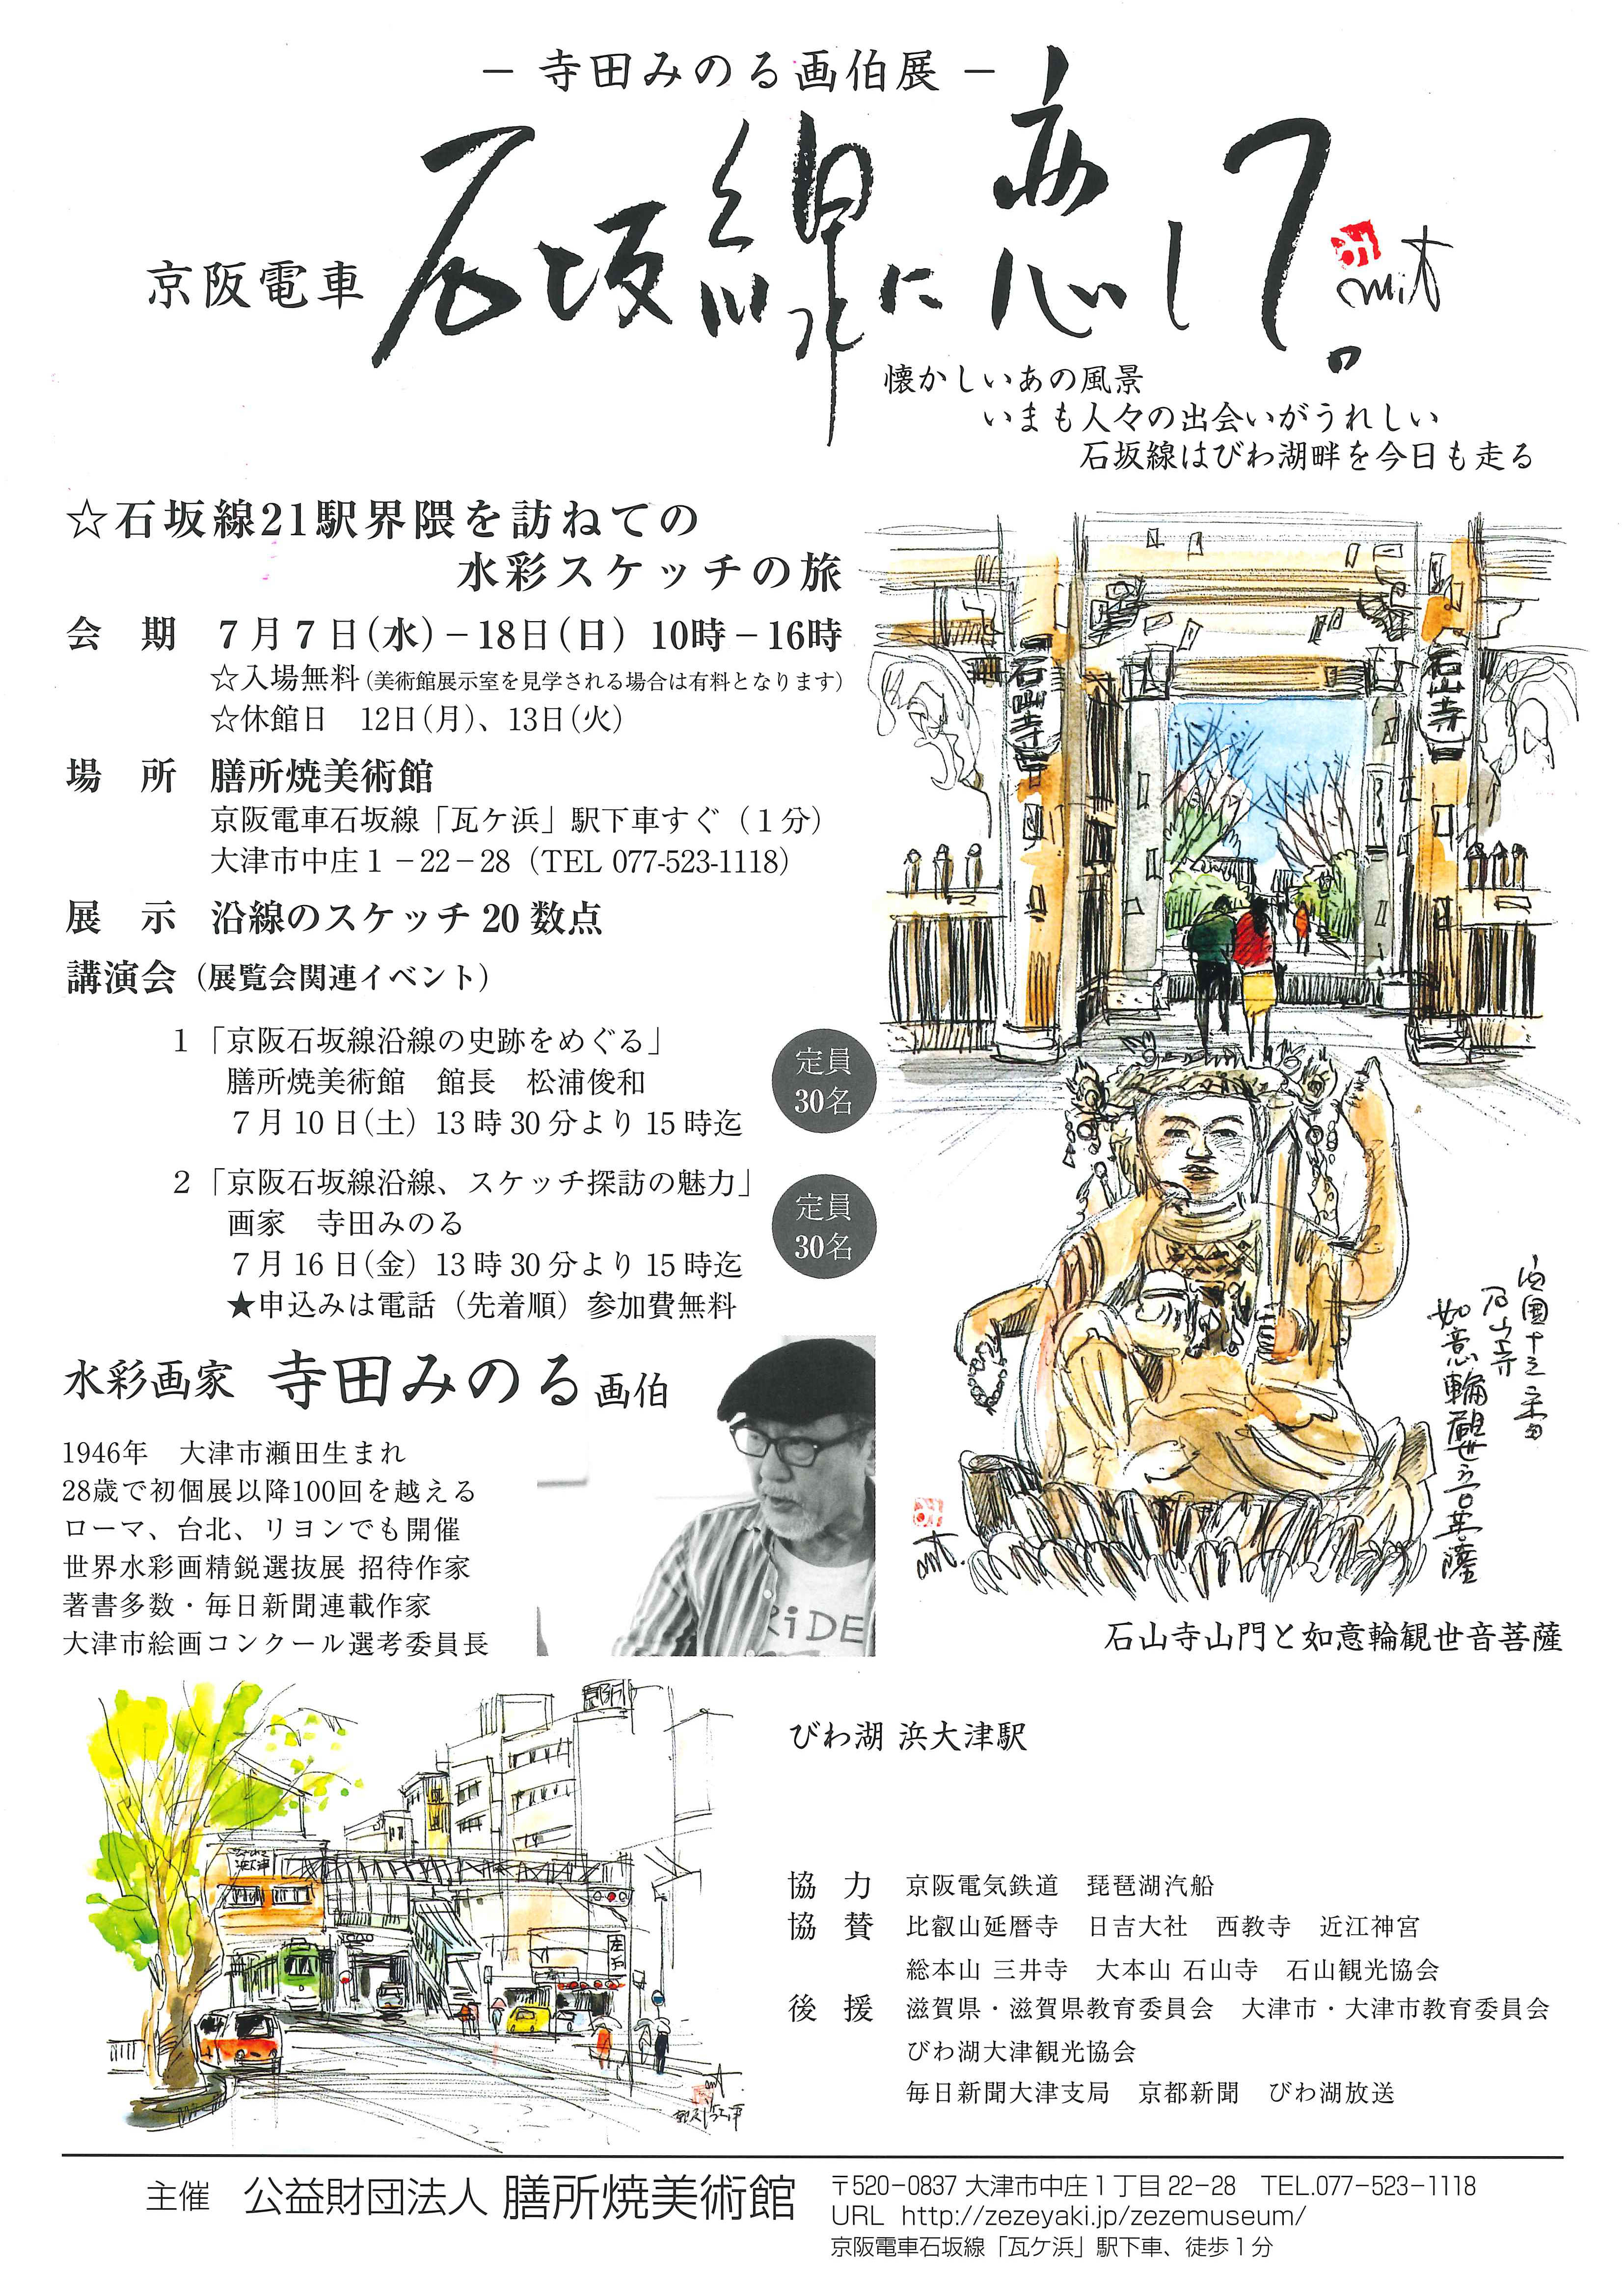 寺田みのる画伯展『京阪電車 石坂線に恋して』 | びわ湖大津トラベルガイド